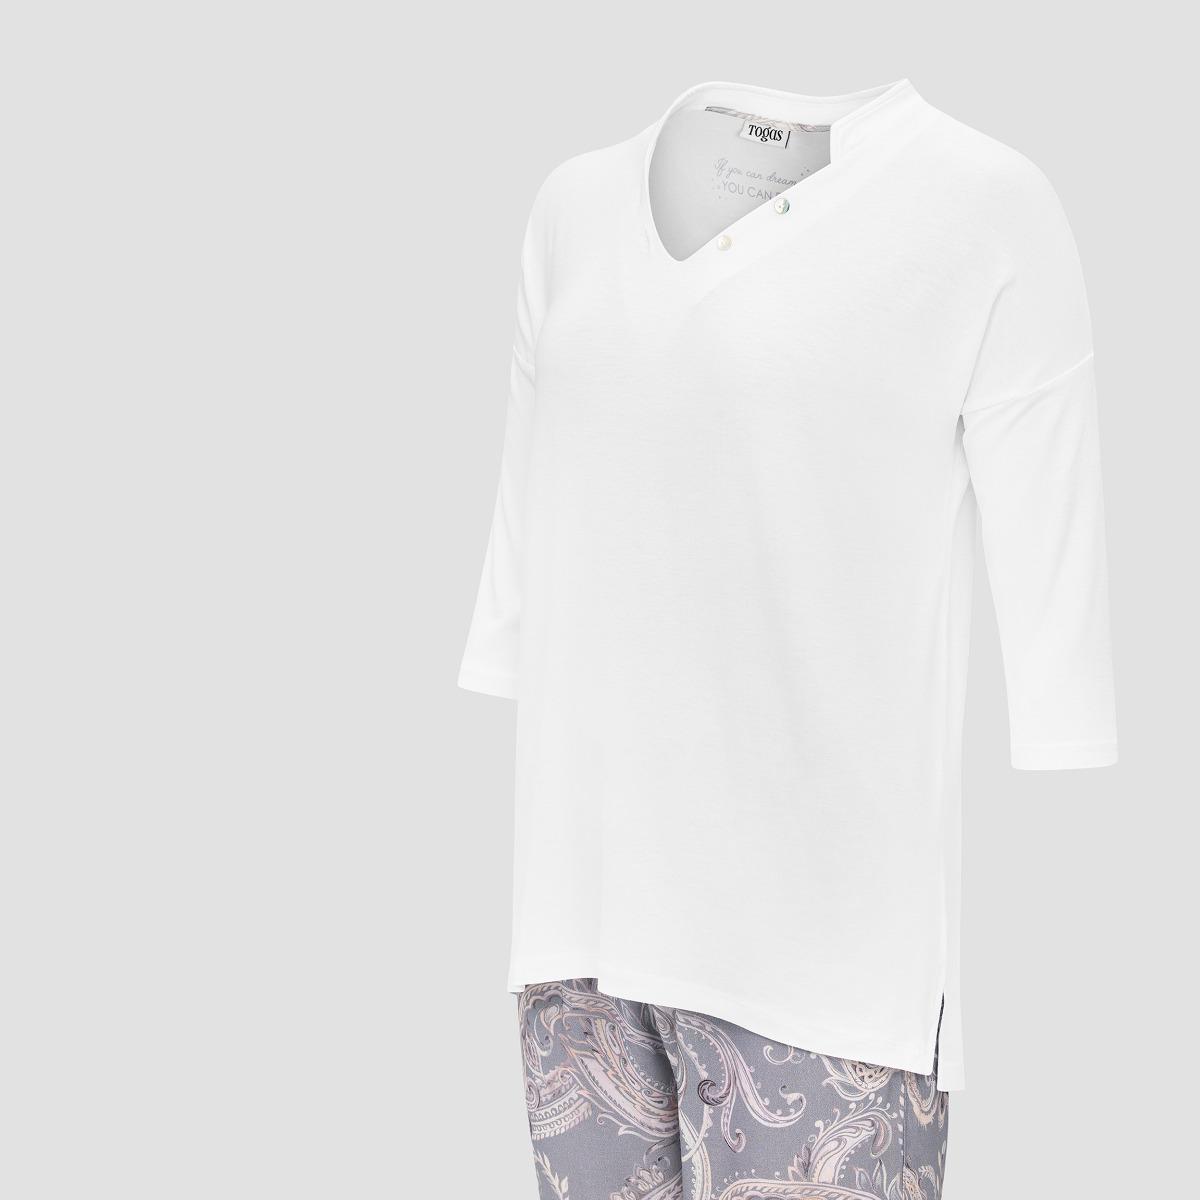 Пижама Togas Эсме бело-сиреневая женская xl(50), цвет бело-сиреневый, размер XL (50) - фото 2